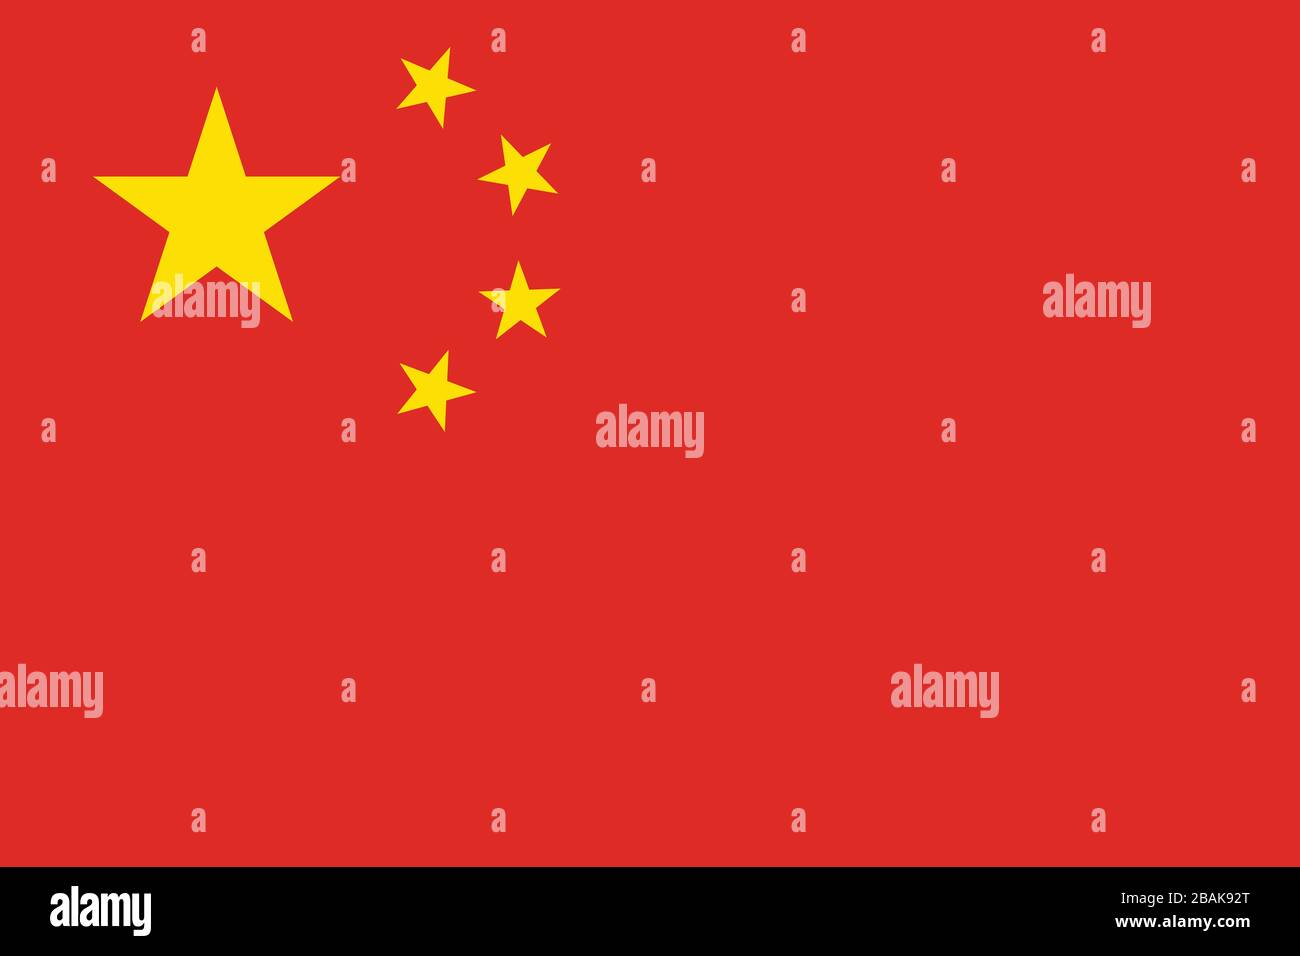 Drapeau de la Chine - Rapport standard du drapeau chinois - mode couleur RVB réel Banque D'Images